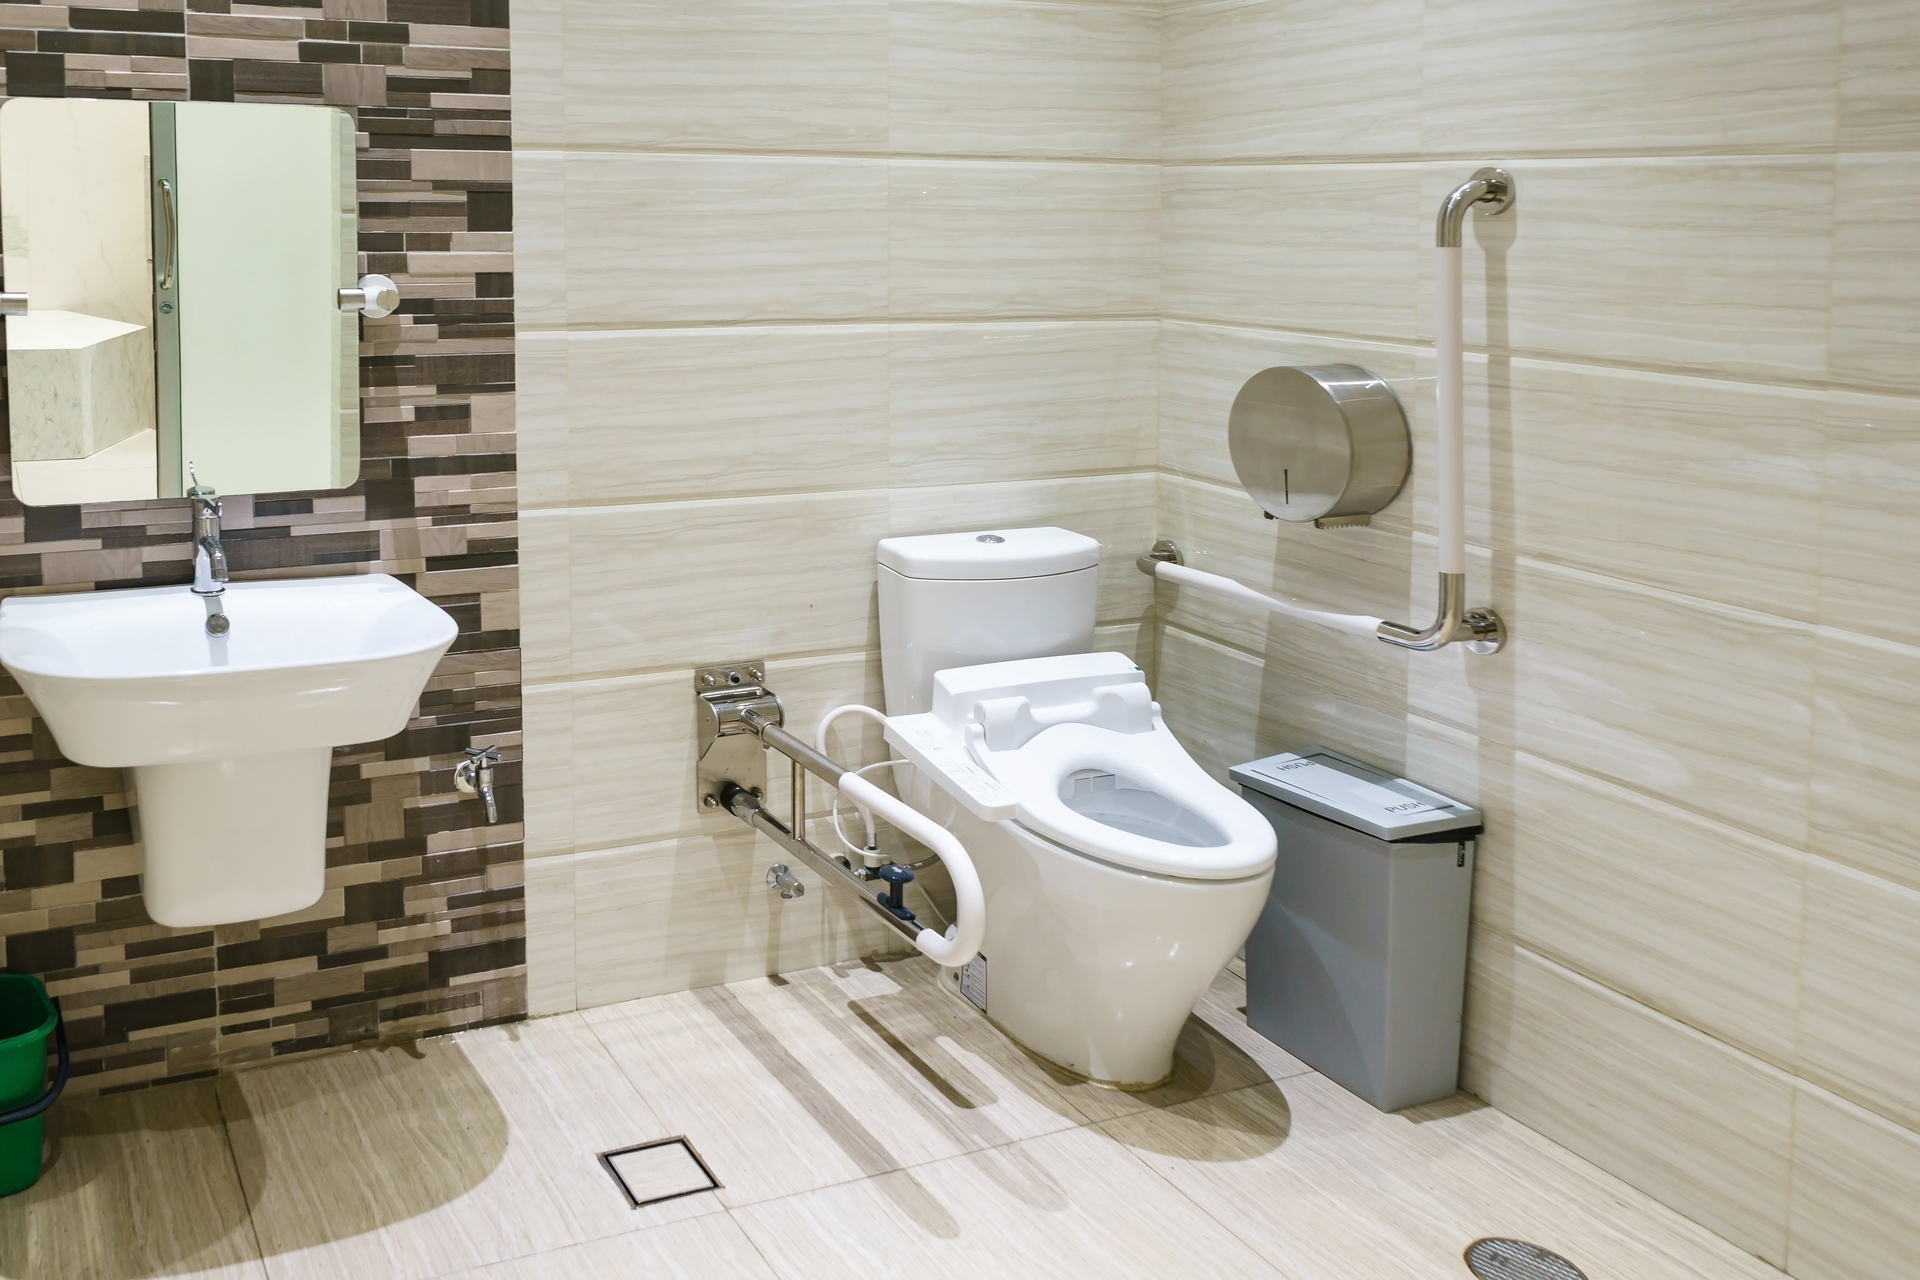 Na obrazku widoczna jest funkcjonalna łazienka stworzona z myślą o osobach niepełnosprawnych. Wnętrze charakteryzuje się przestronnością oraz liczba udogodnień, które ułatwiają codzienne czynności. W łazience znajduje się m.in. specjalnie zaprojektowany podjazd, poręcze, dostępny prysznic na poziomie podłogi oraz odpowiednio umieszczone uchwyty, które zapewniają bezpieczeństwo i wygodę użytkowania dla osób o ograniczonej mobilności